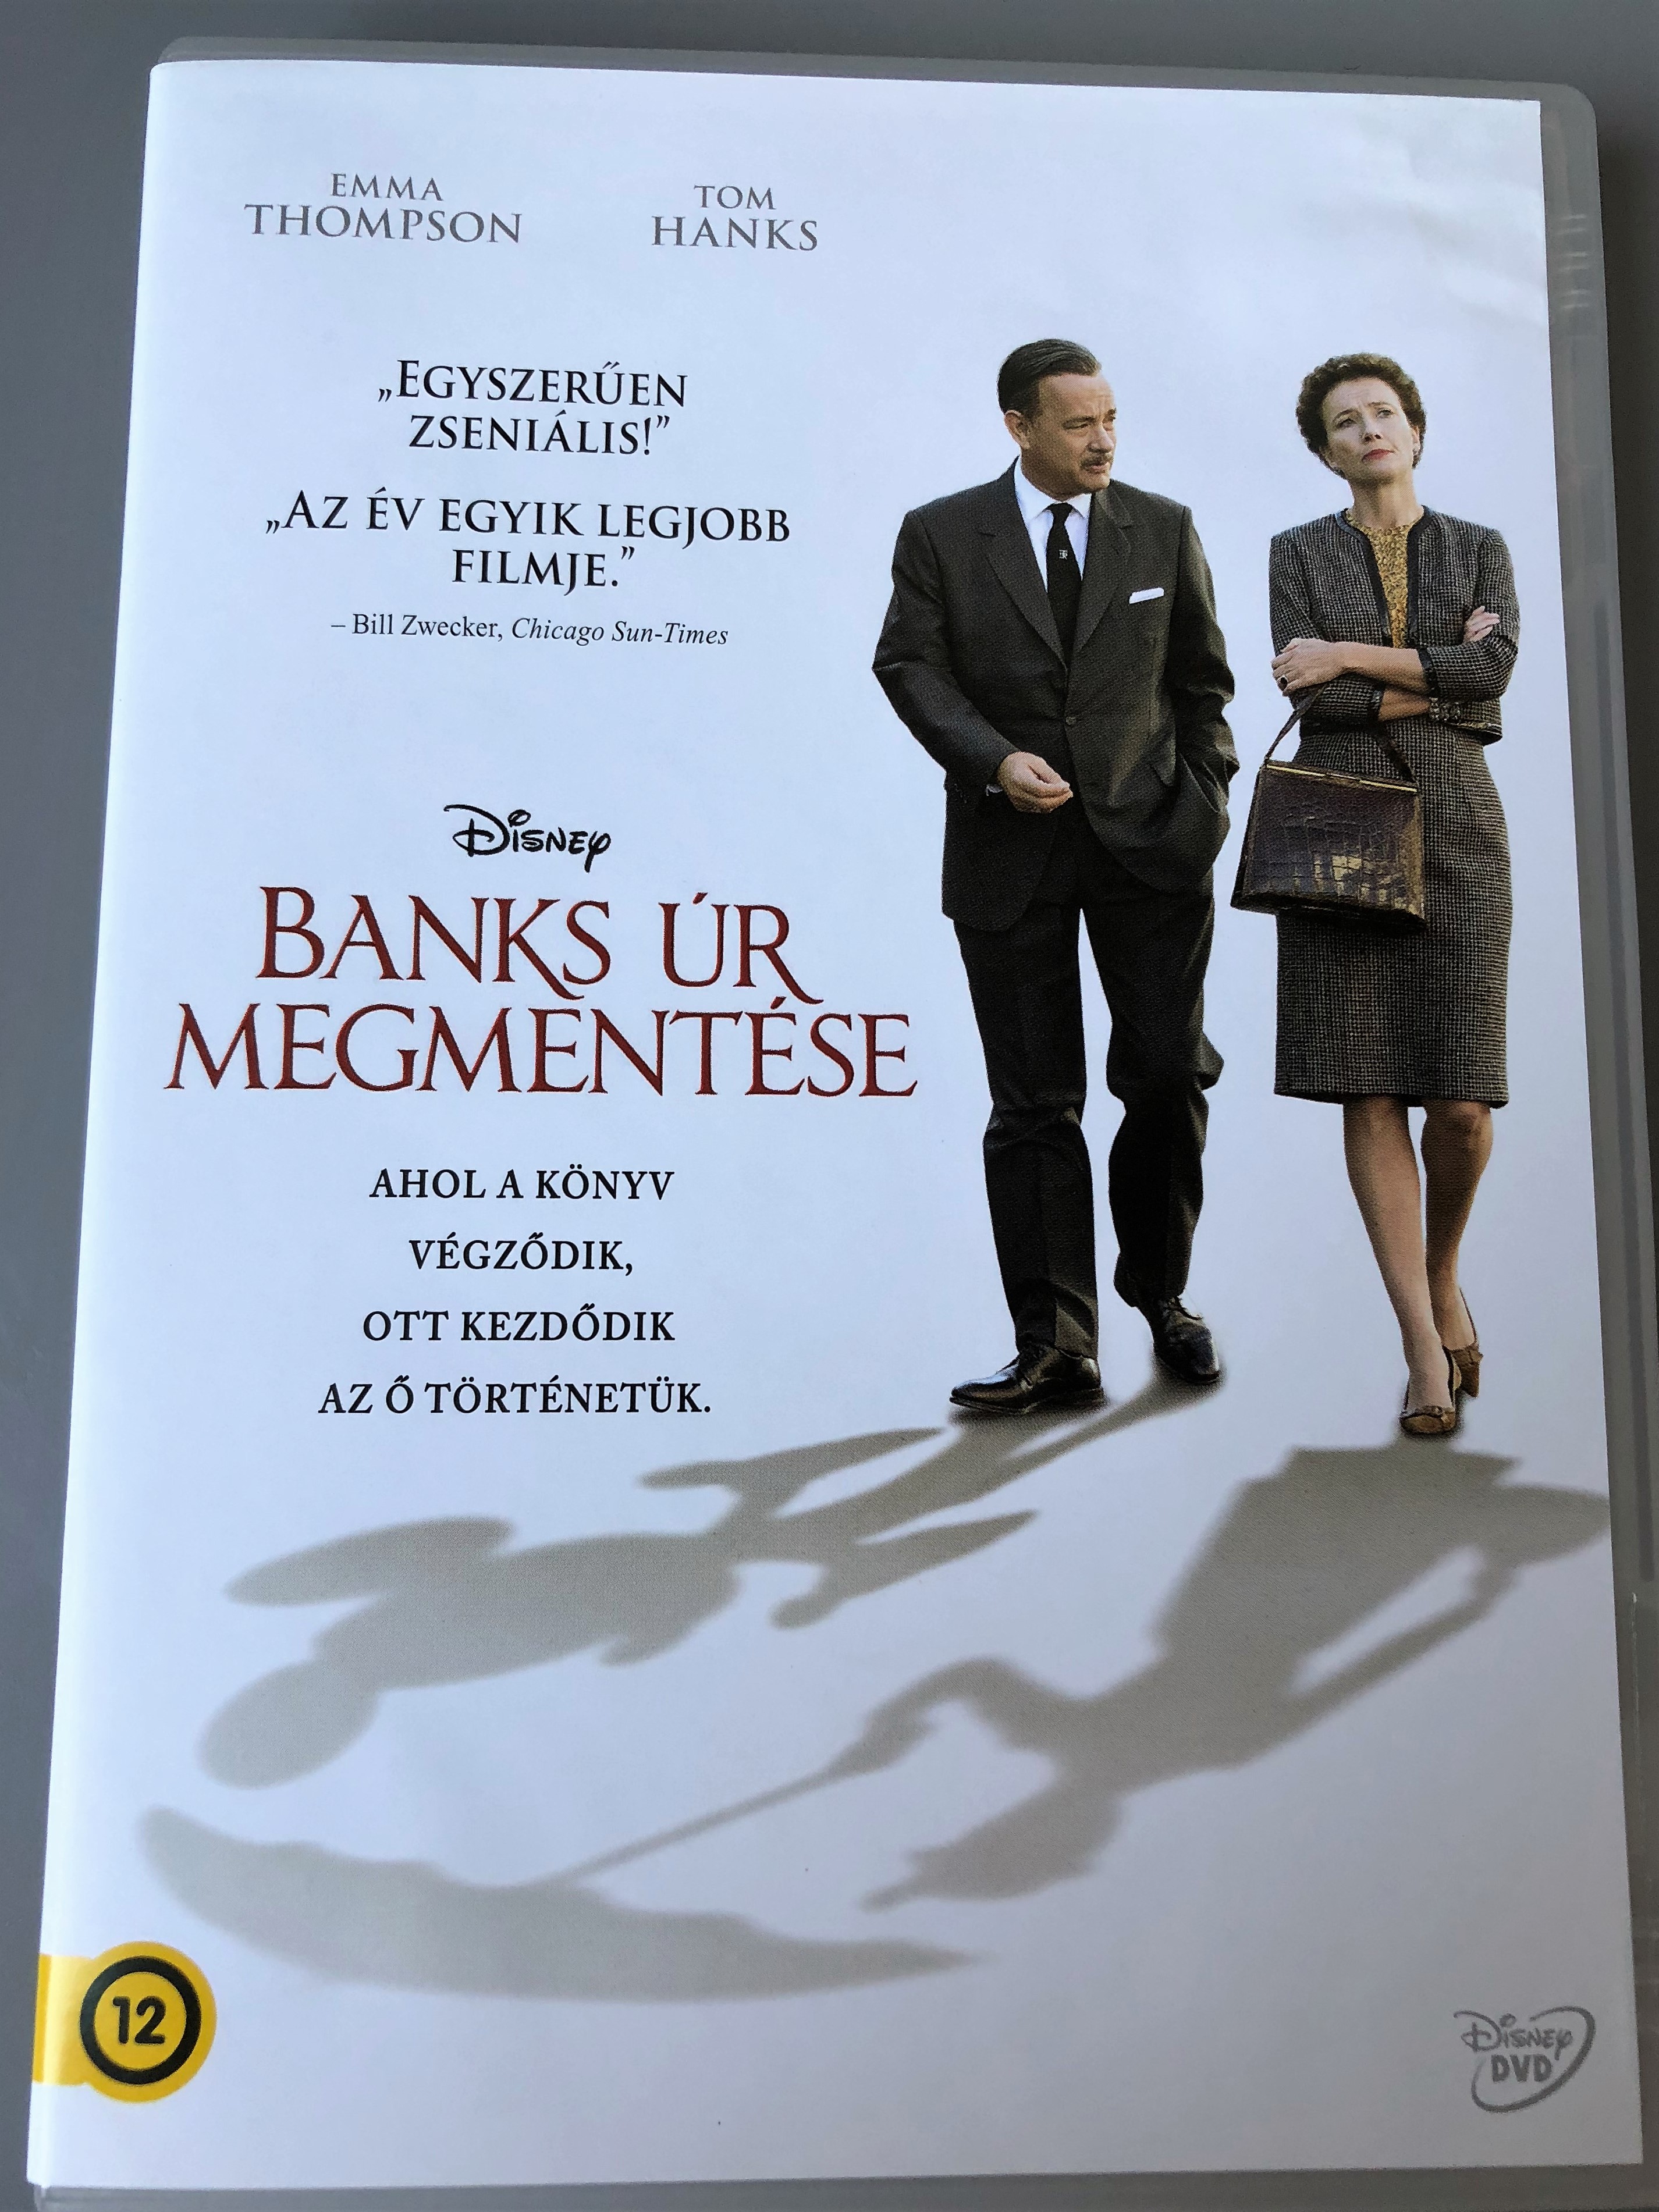 -saving-mr.-banks-dvd-2014-banks-r-megment-se-directed-by-john-lee-hancock-starring-tom-hanks-emma-thompson-1-.jpg